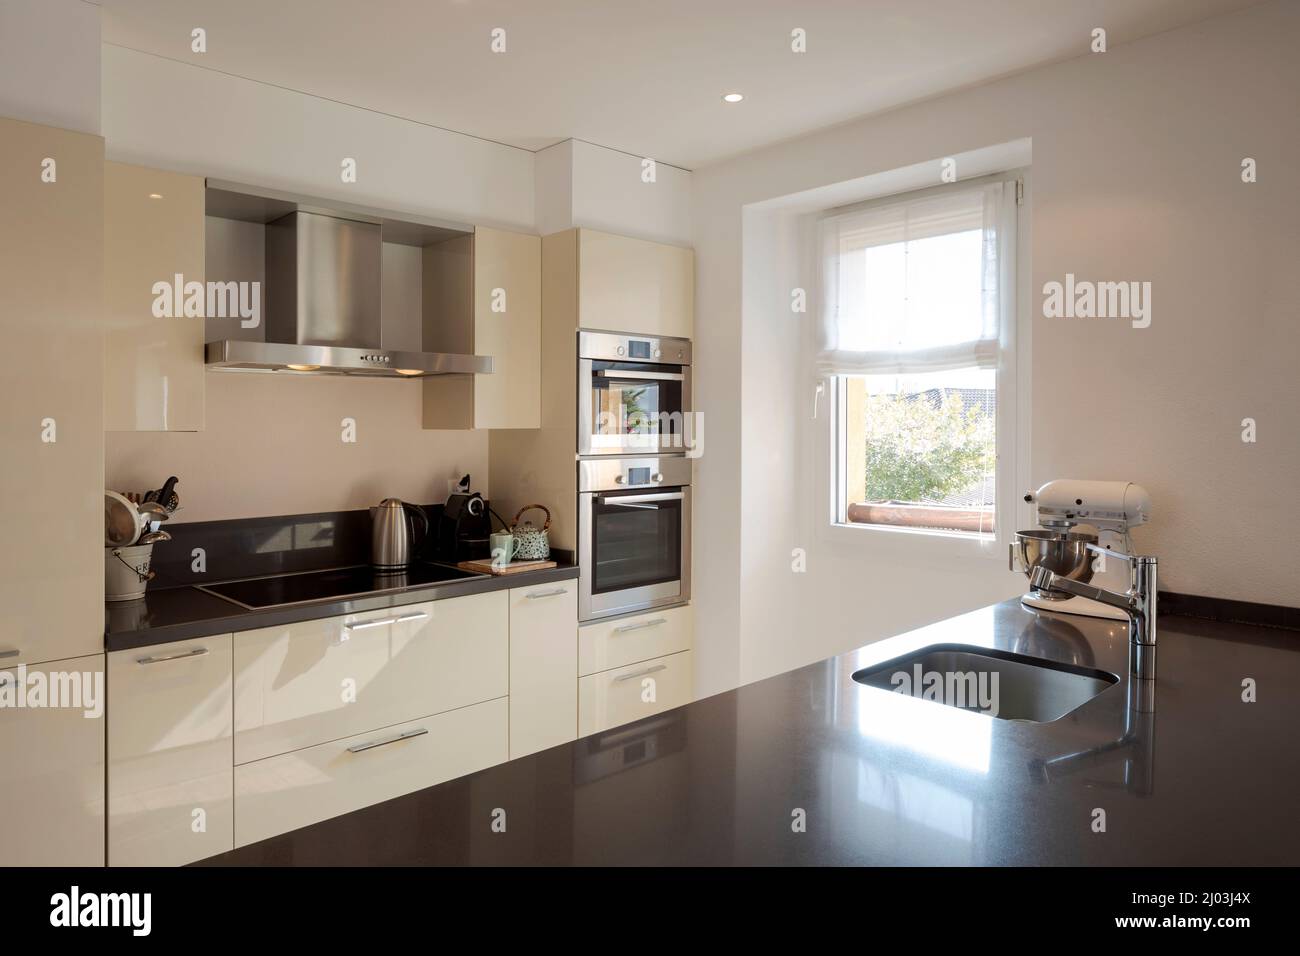 Moderne Küchenausstattung mit großer dunkler Insel mit Hockern. Waschbecken aus Edelstahl und helles Fenster. Stockfoto